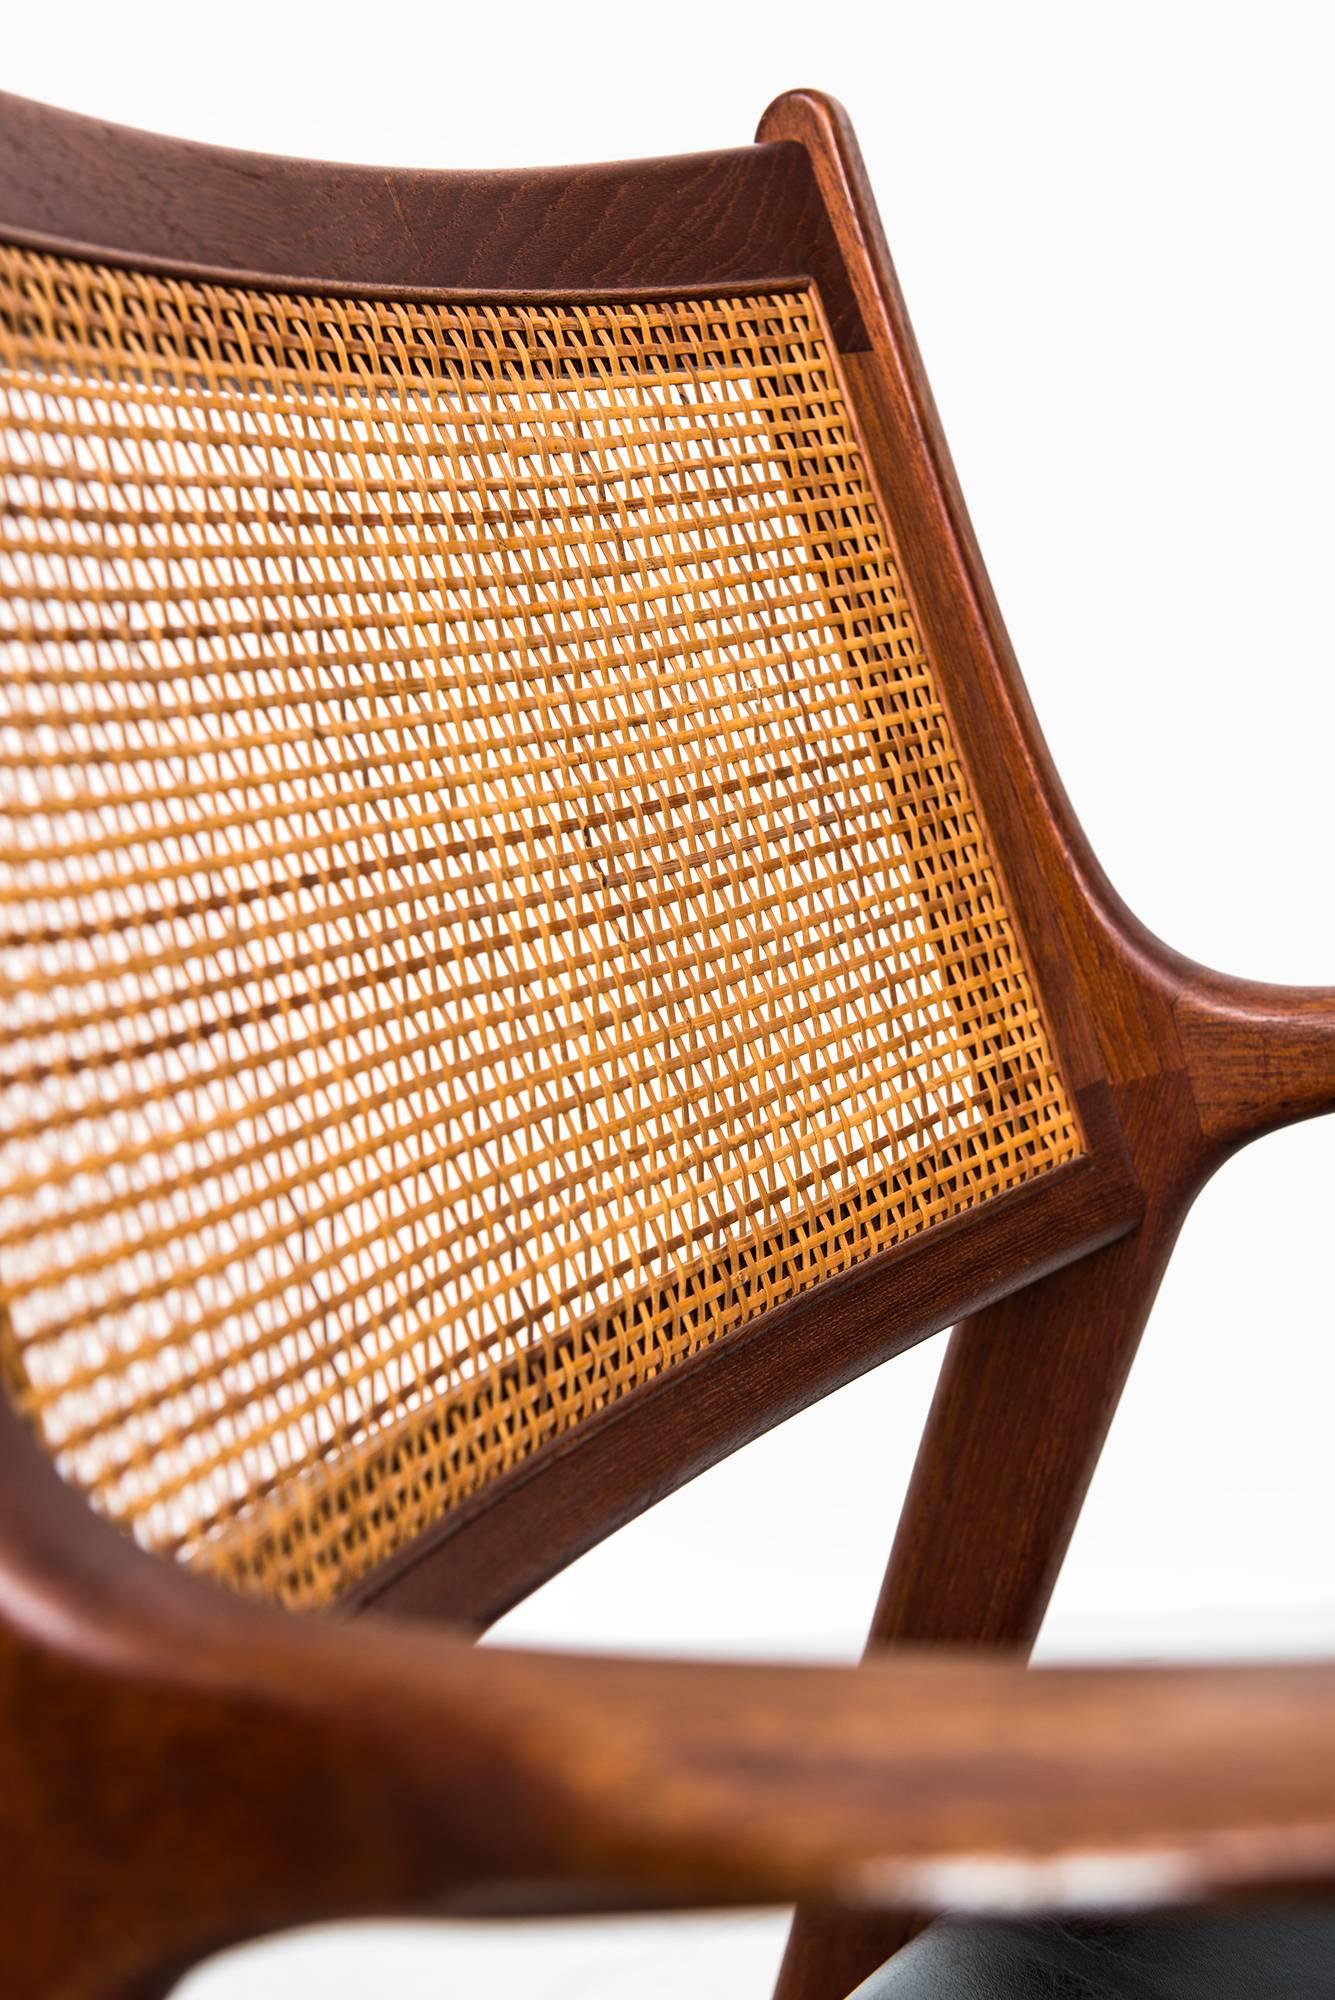 Rare pair of easy chairs designed by Karl-Erik Ekselius. Produced by JOC in Vetlanda, Sweden.